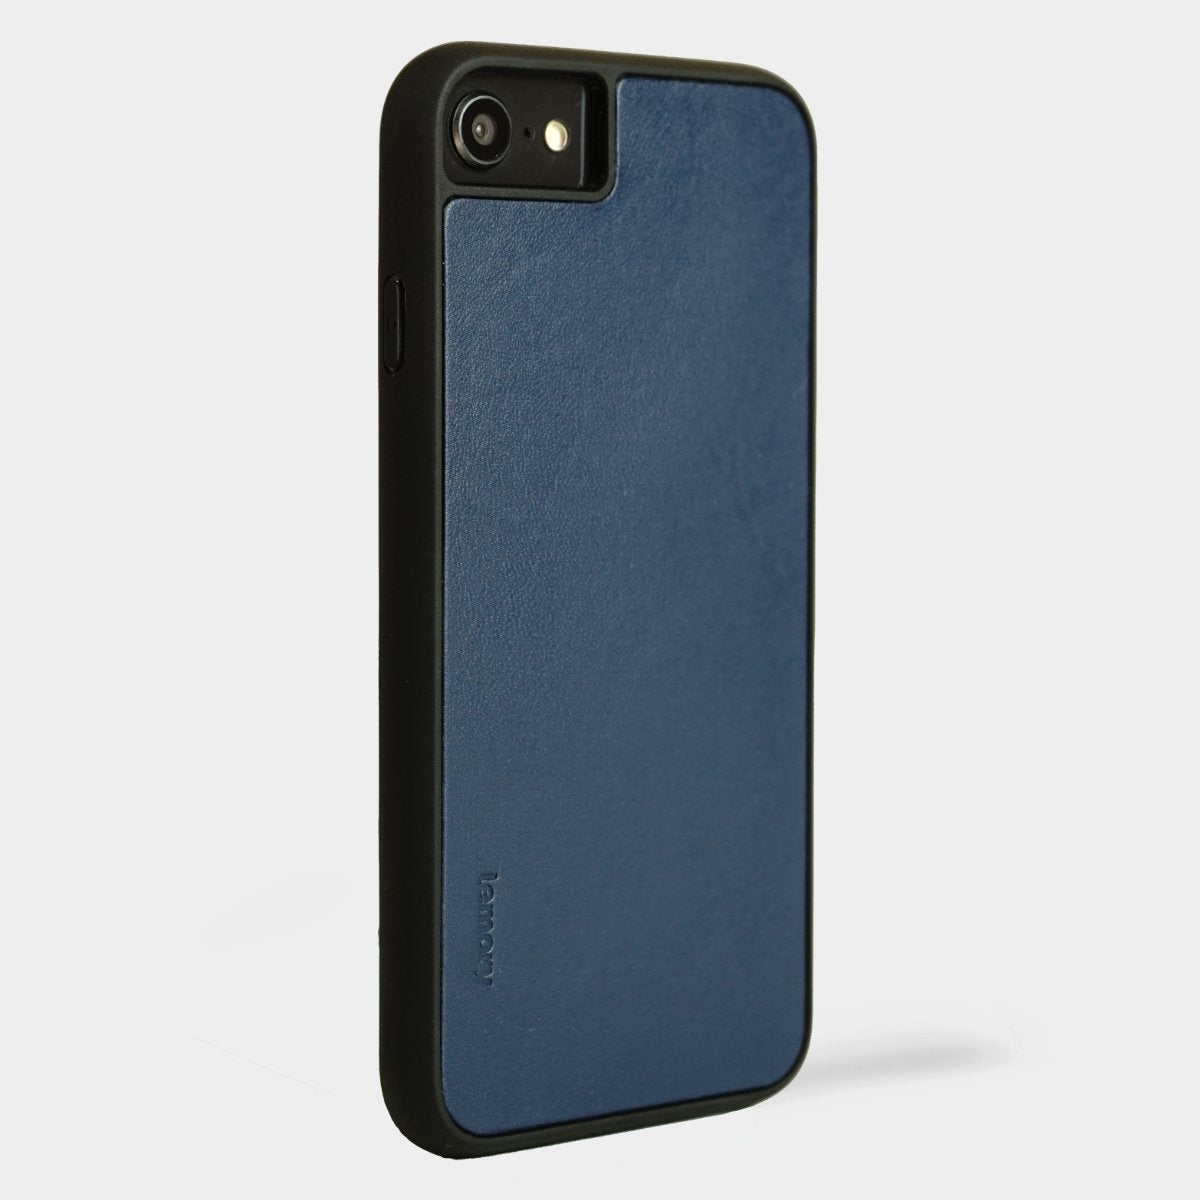 Prémiový kožený kryt Lemory PROTECT na mobil Apple iPhone 7 / 8 / SE 2020 - Tmavě modrý (Prémiový kožený kryt, pouzdro, obal Lemory PROTECT na mobilní telefon Apple iPhone 7 / Apple iPhone 8 / Apple iPhone SE 2020 - Tmavě modrý)